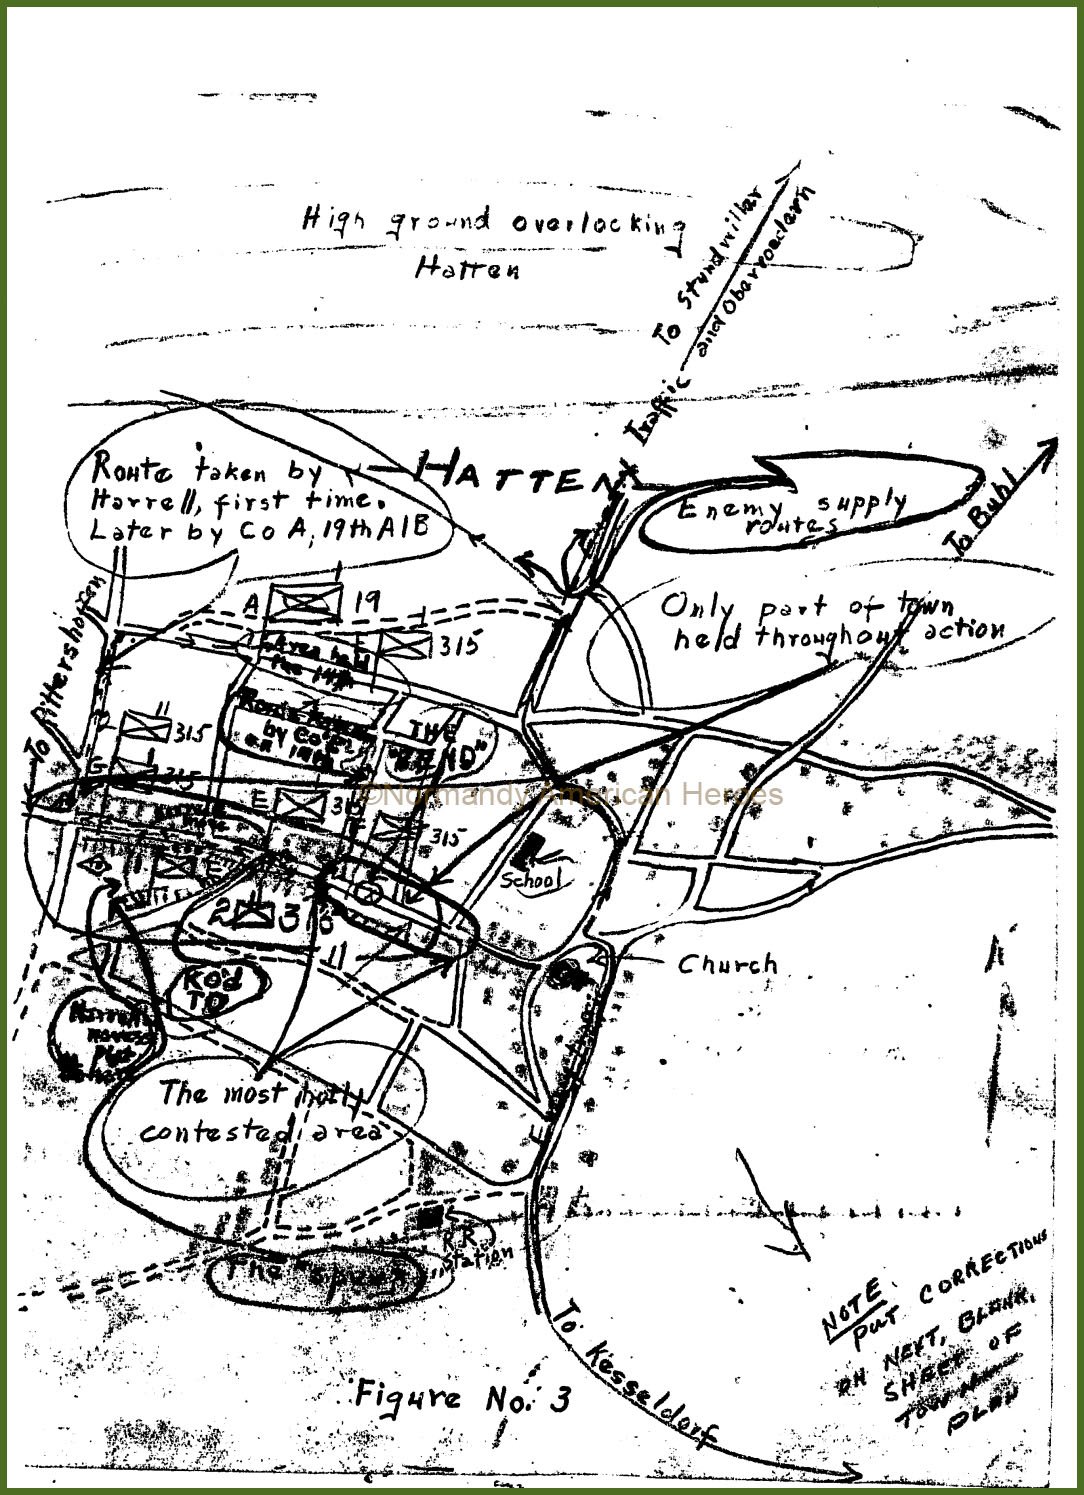 Hatten Map Figure N°3